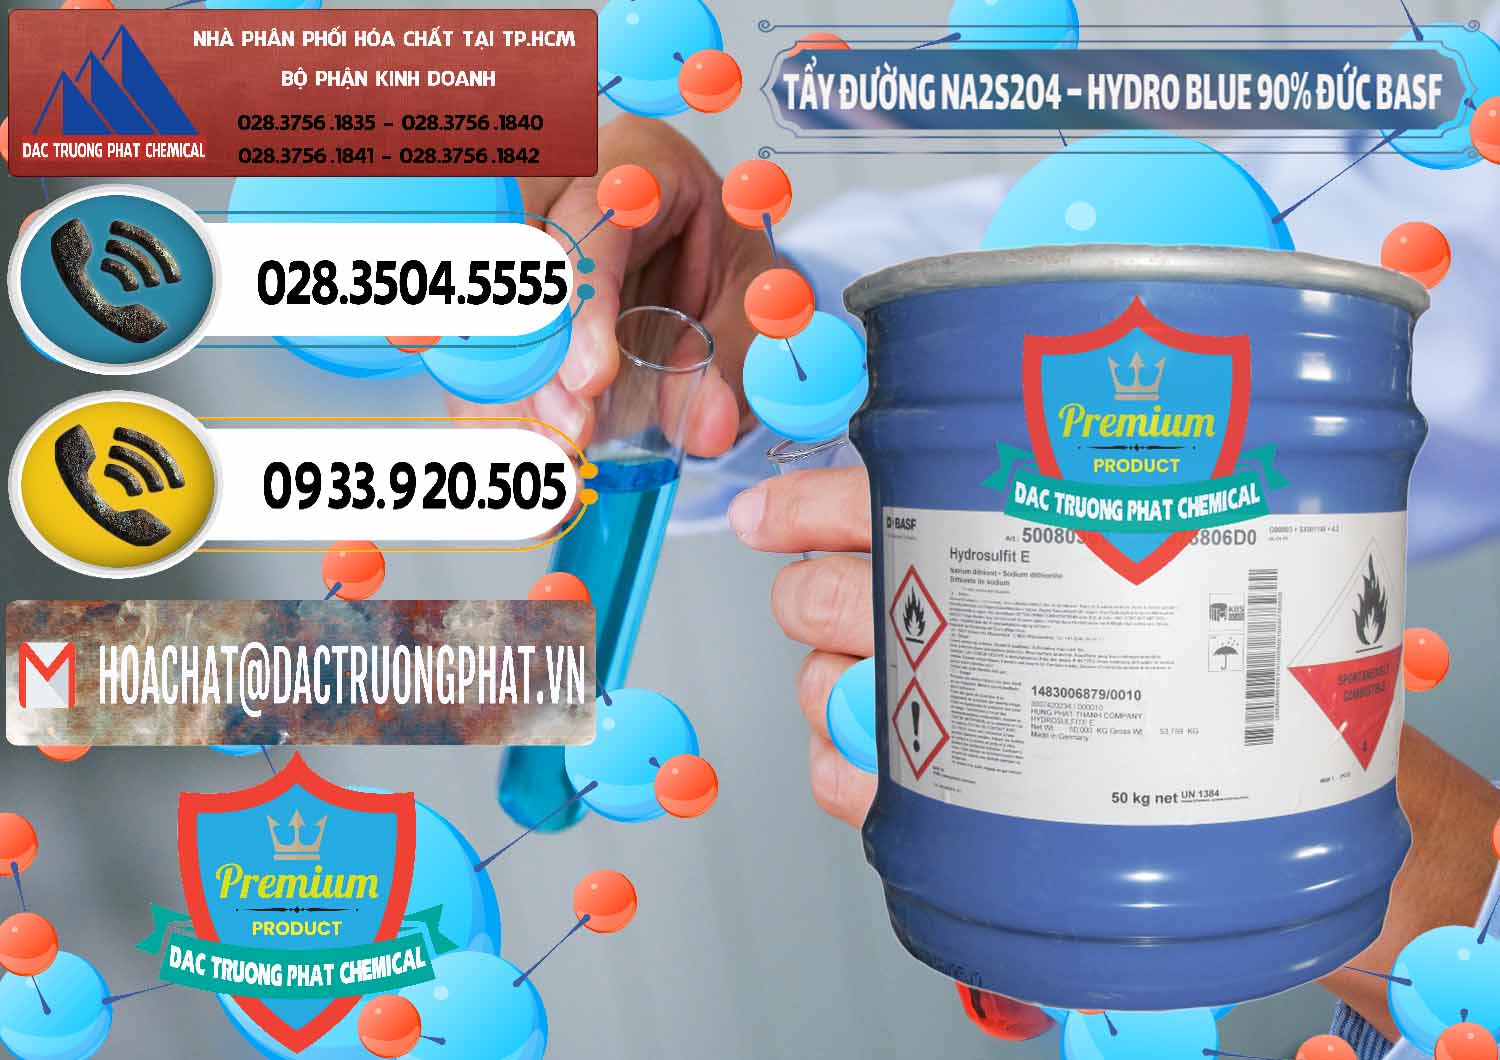 Nhập khẩu và bán Tẩy Đường NA2S2O4 – Hydro Blue 90% Thùng Lùn BASF Đức Germany - 0157 - Công ty chuyên phân phối - cung ứng hóa chất tại TP.HCM - hoachatdetnhuom.vn